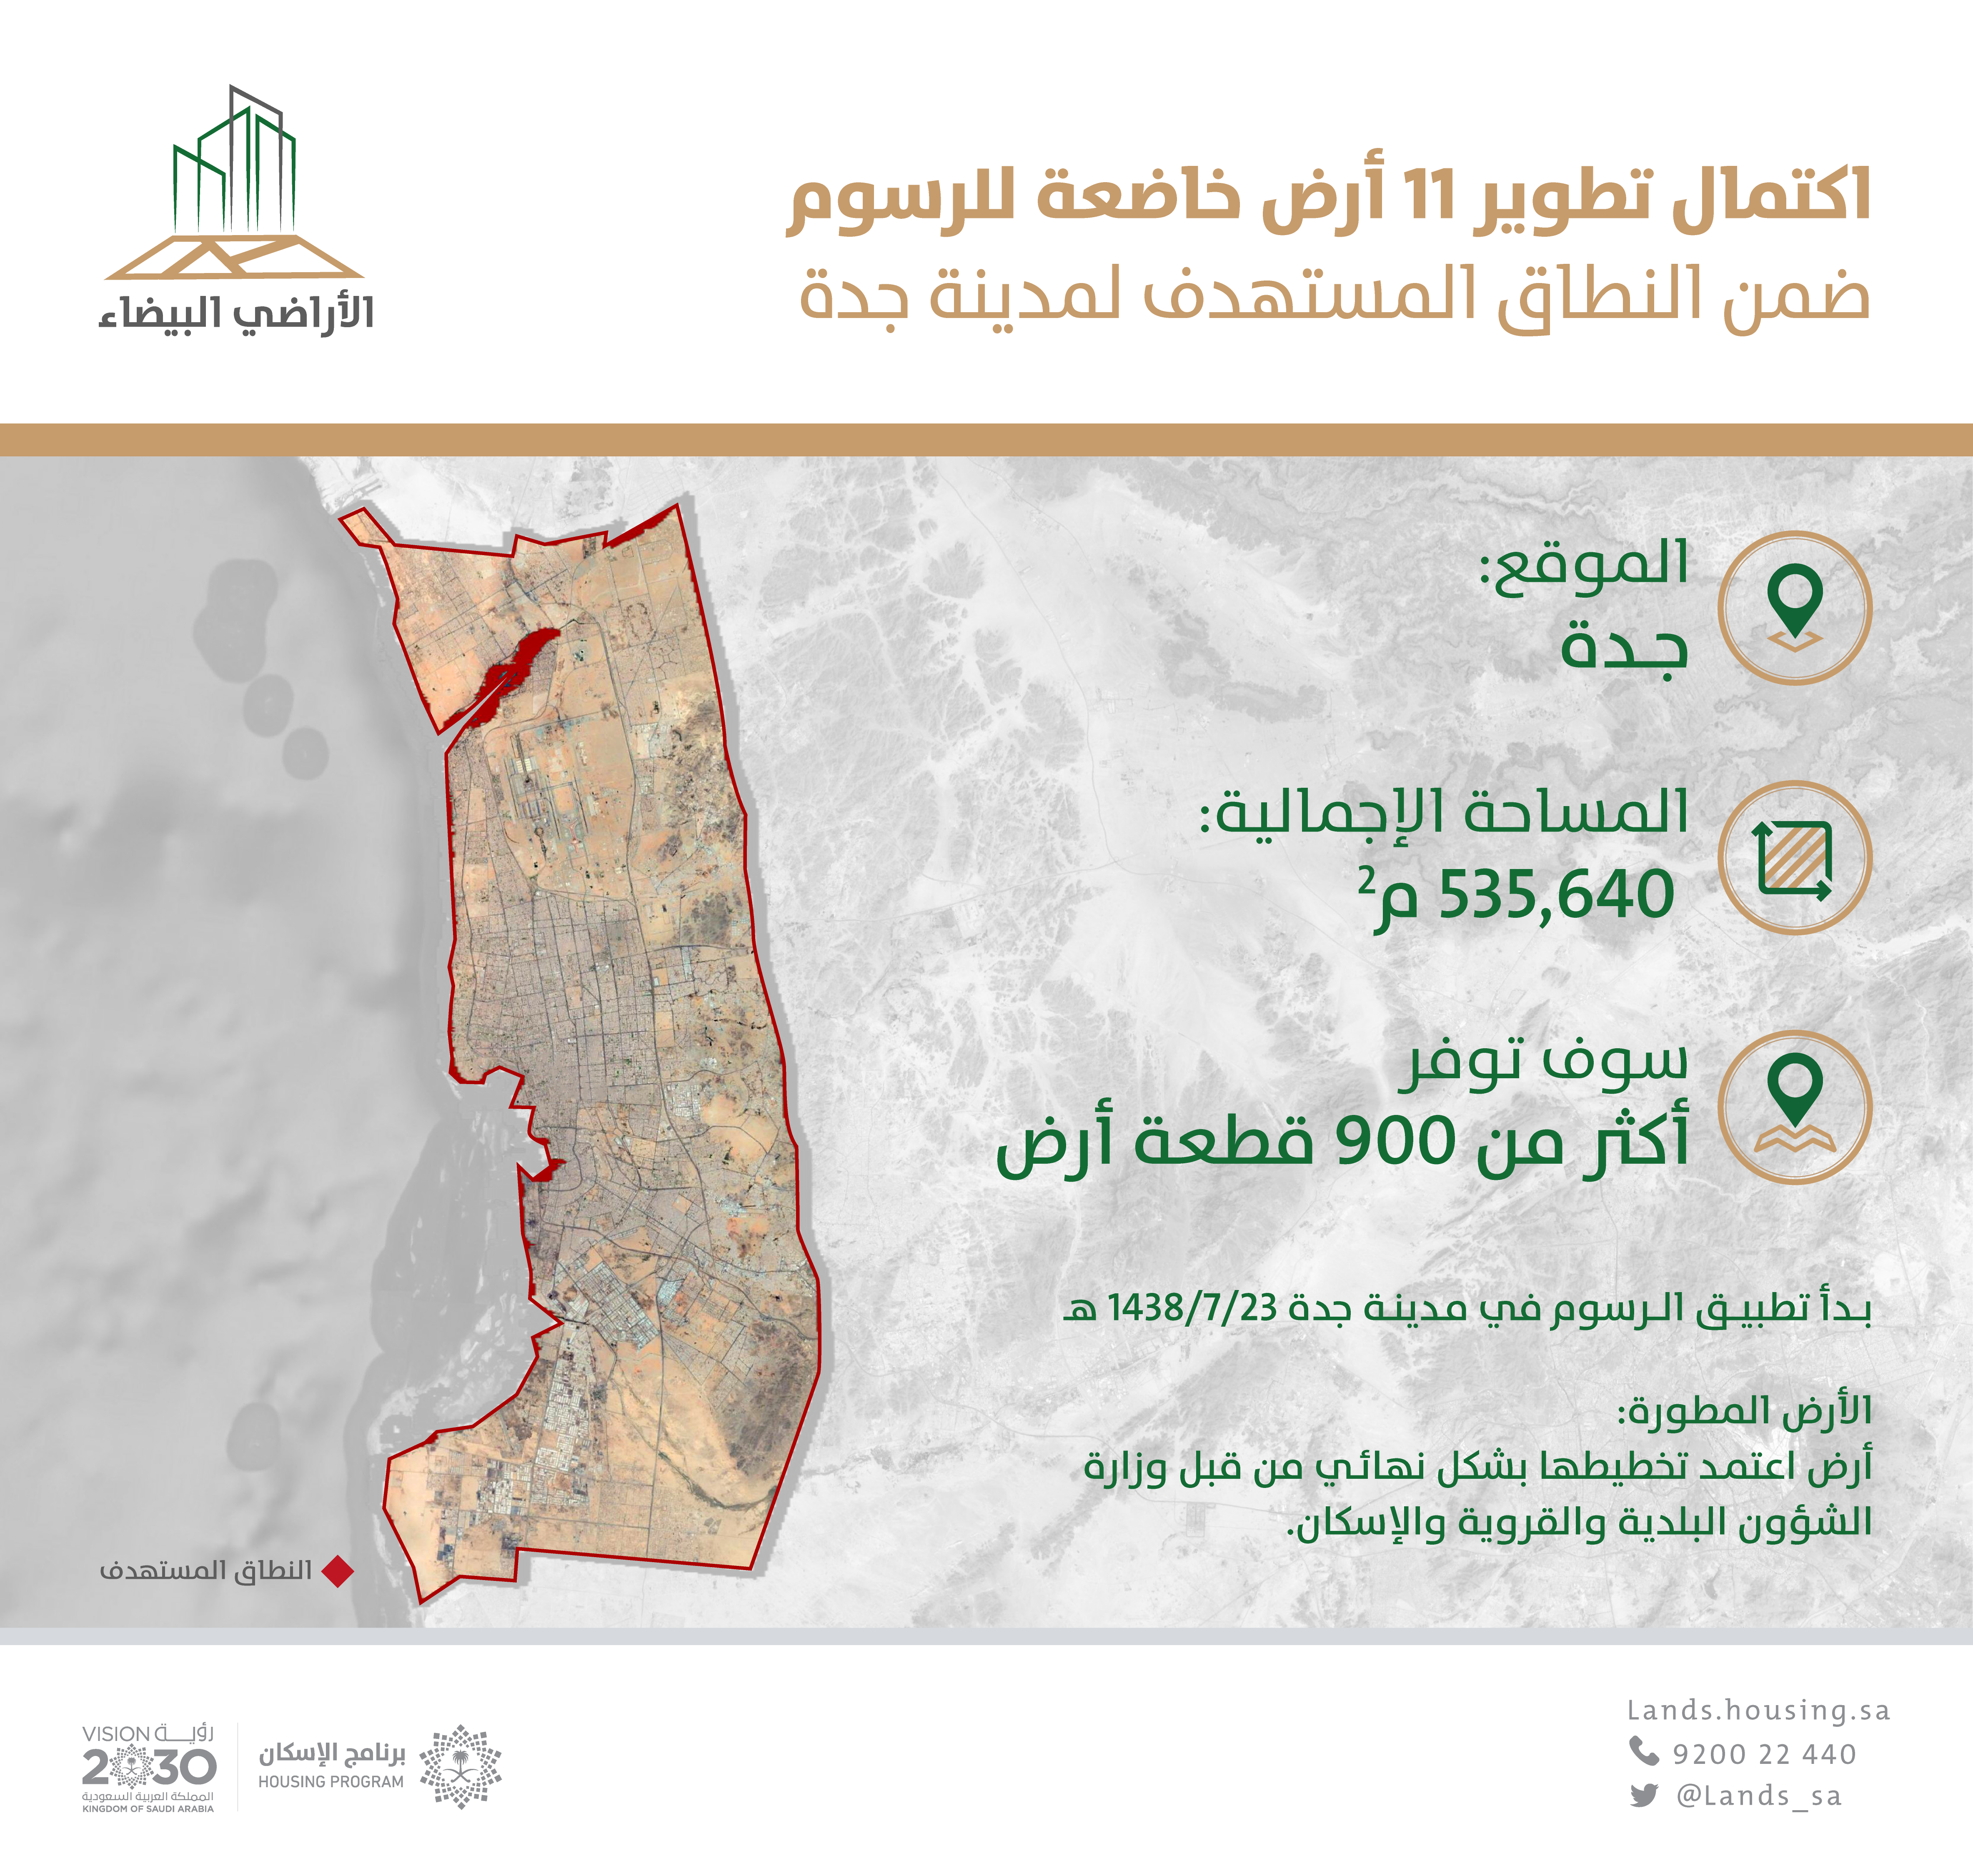 "الأراضي البيضاء": الانتهاء من تطوير 11 أرض من قبل ملاكها في جدة